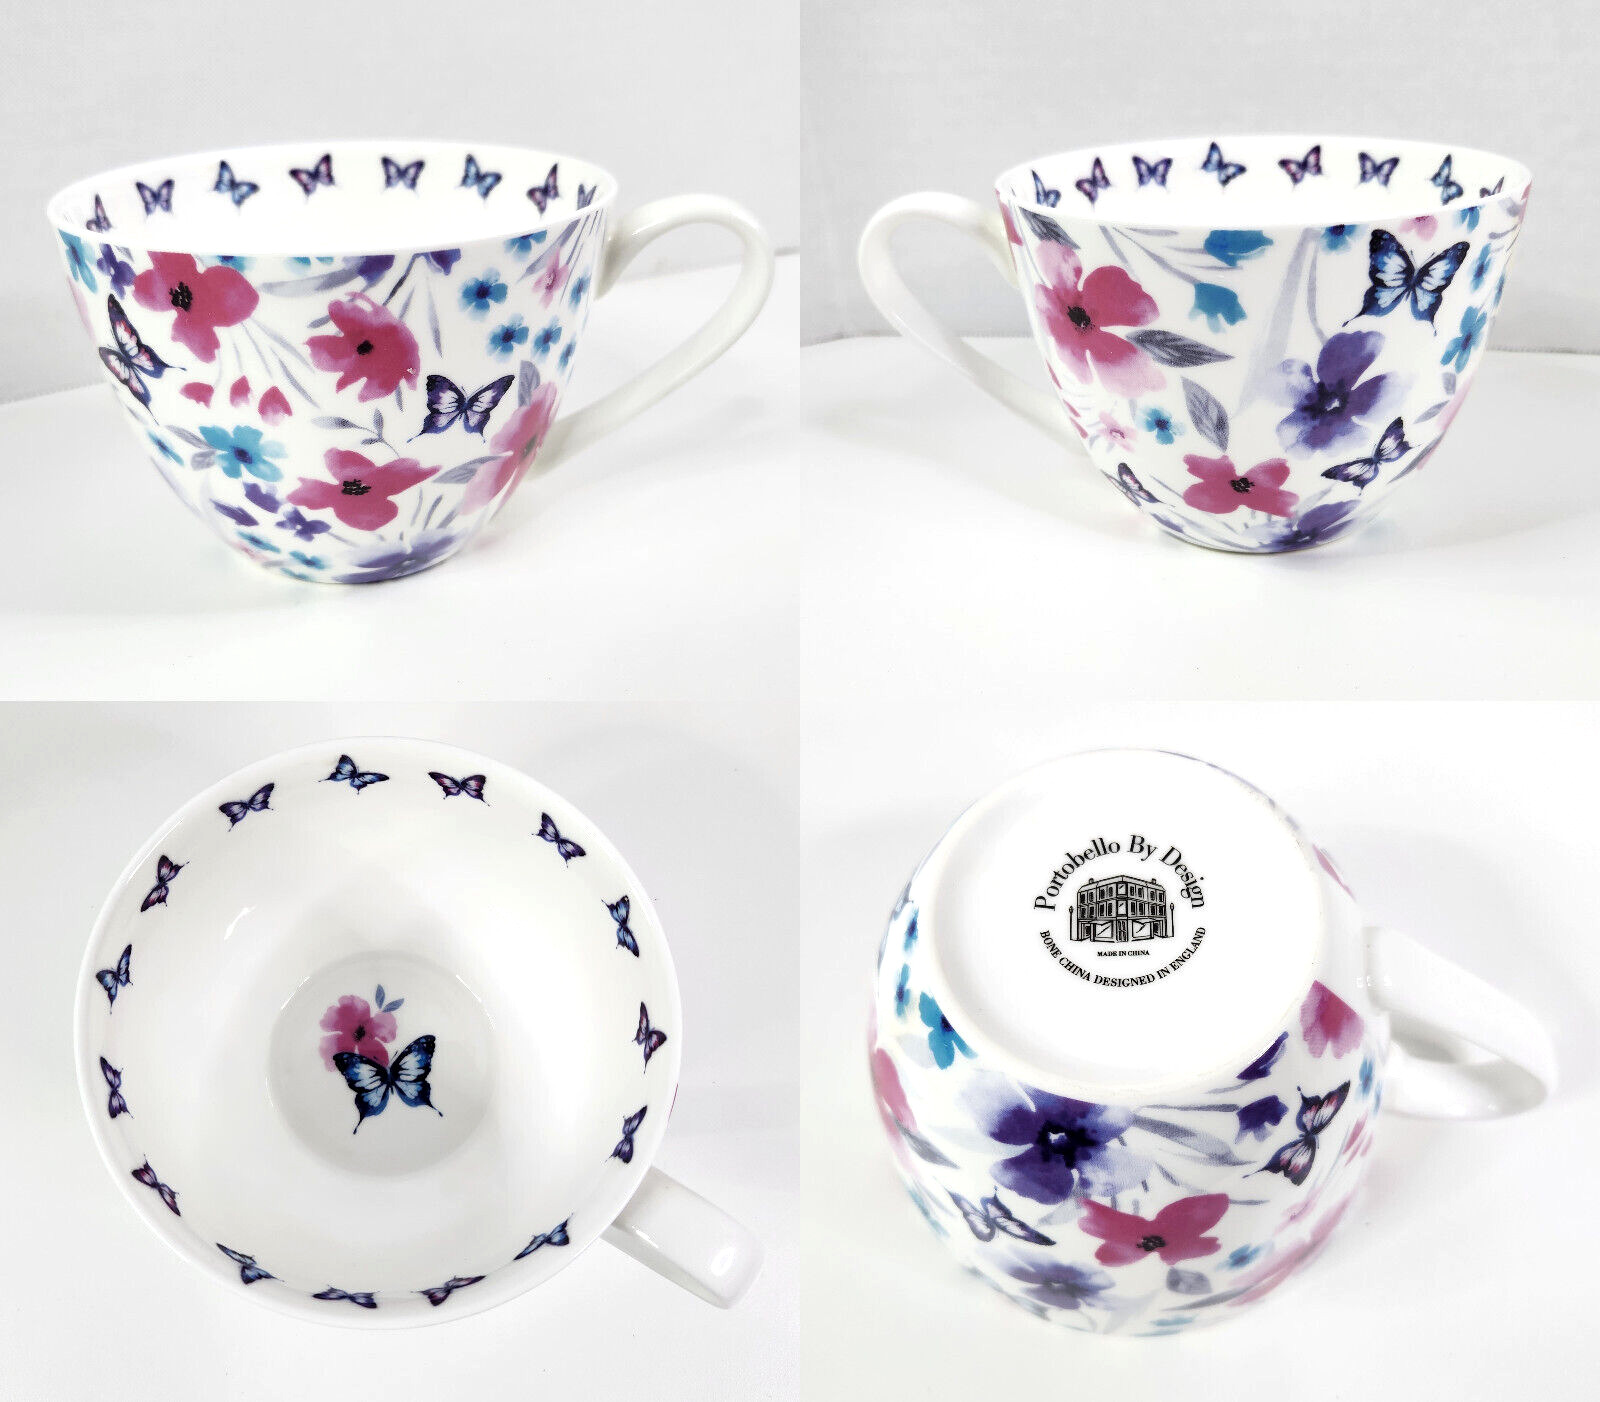 Floral & Butterflies Portobello By Design in England Rare Jumbo Mug/Cup HTF VGC